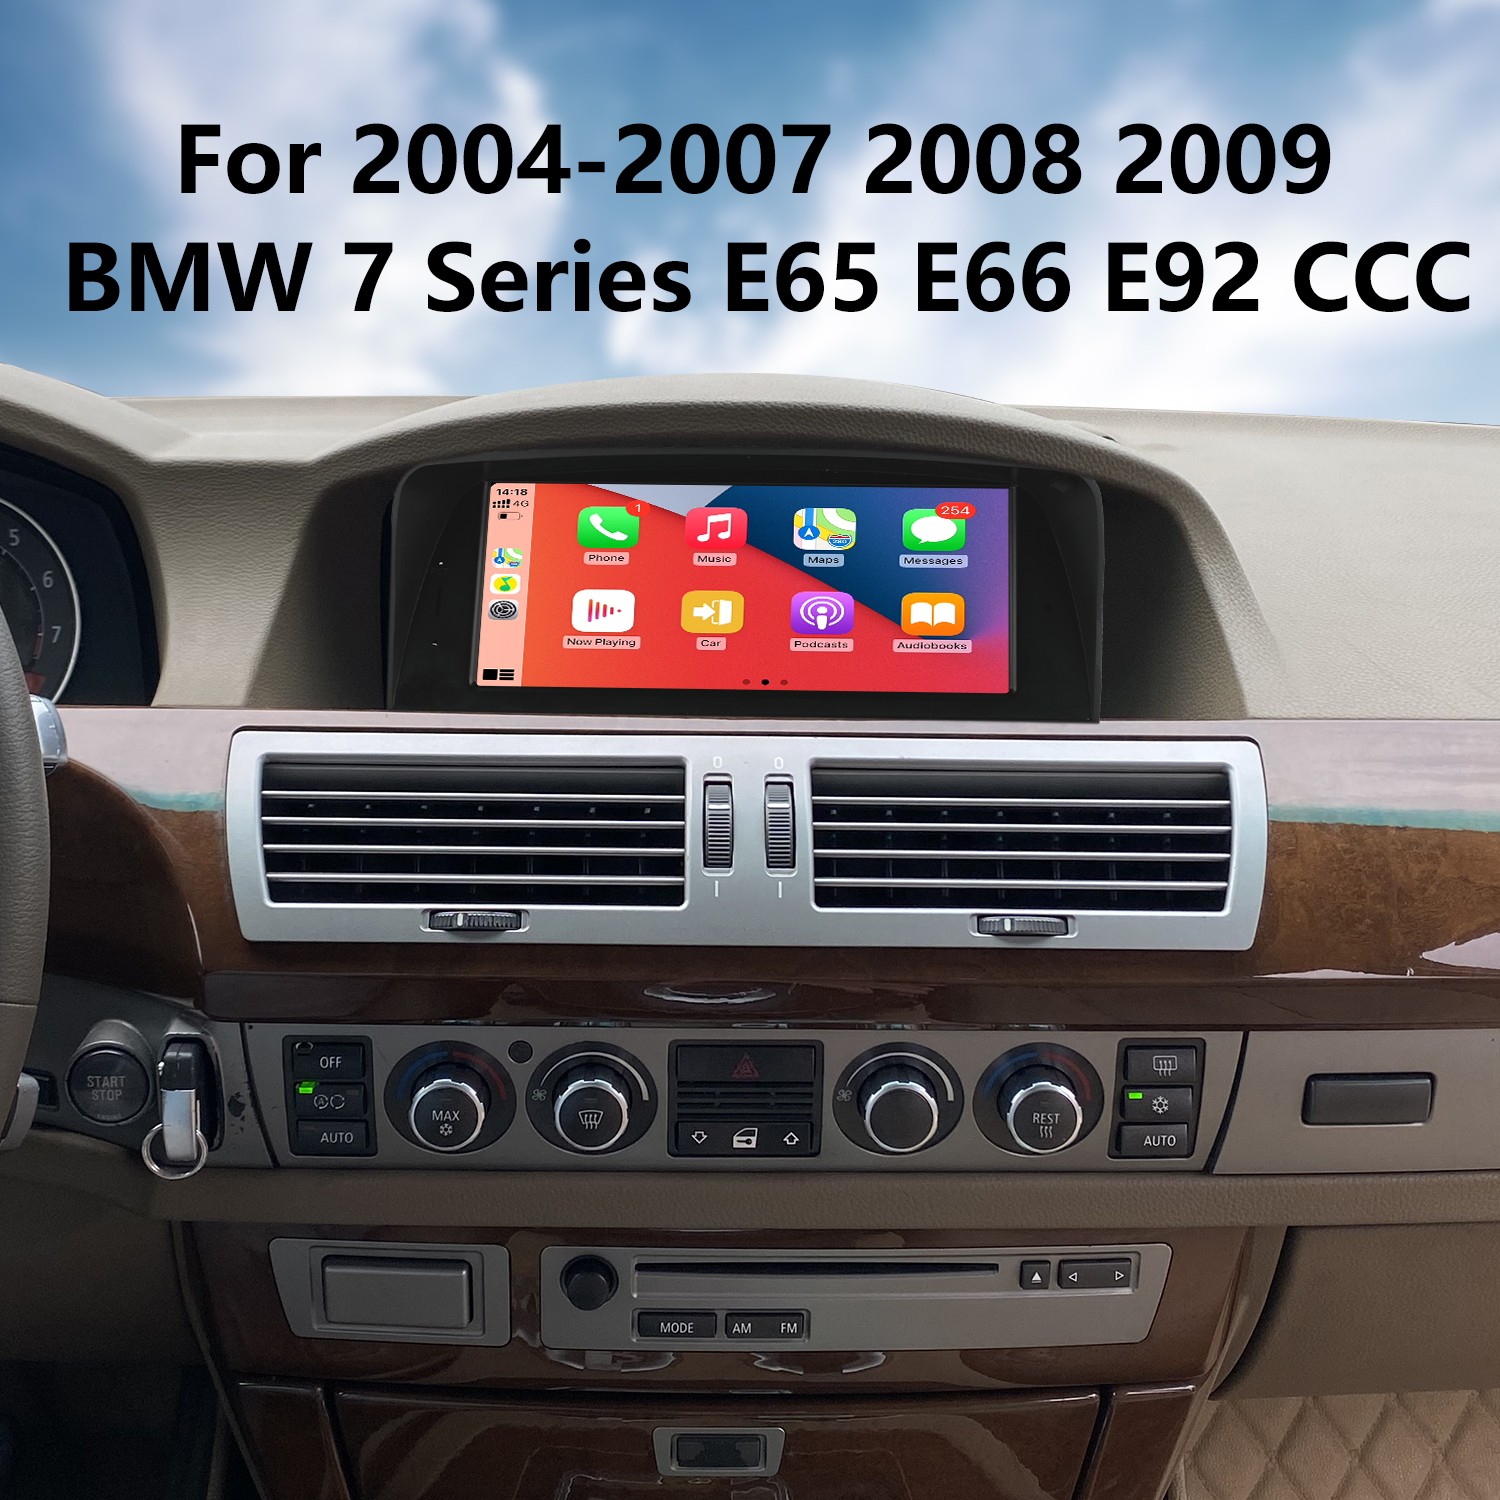 Comment installer un nouvel écran GPS dans ma BMW série 7 E65 ? –